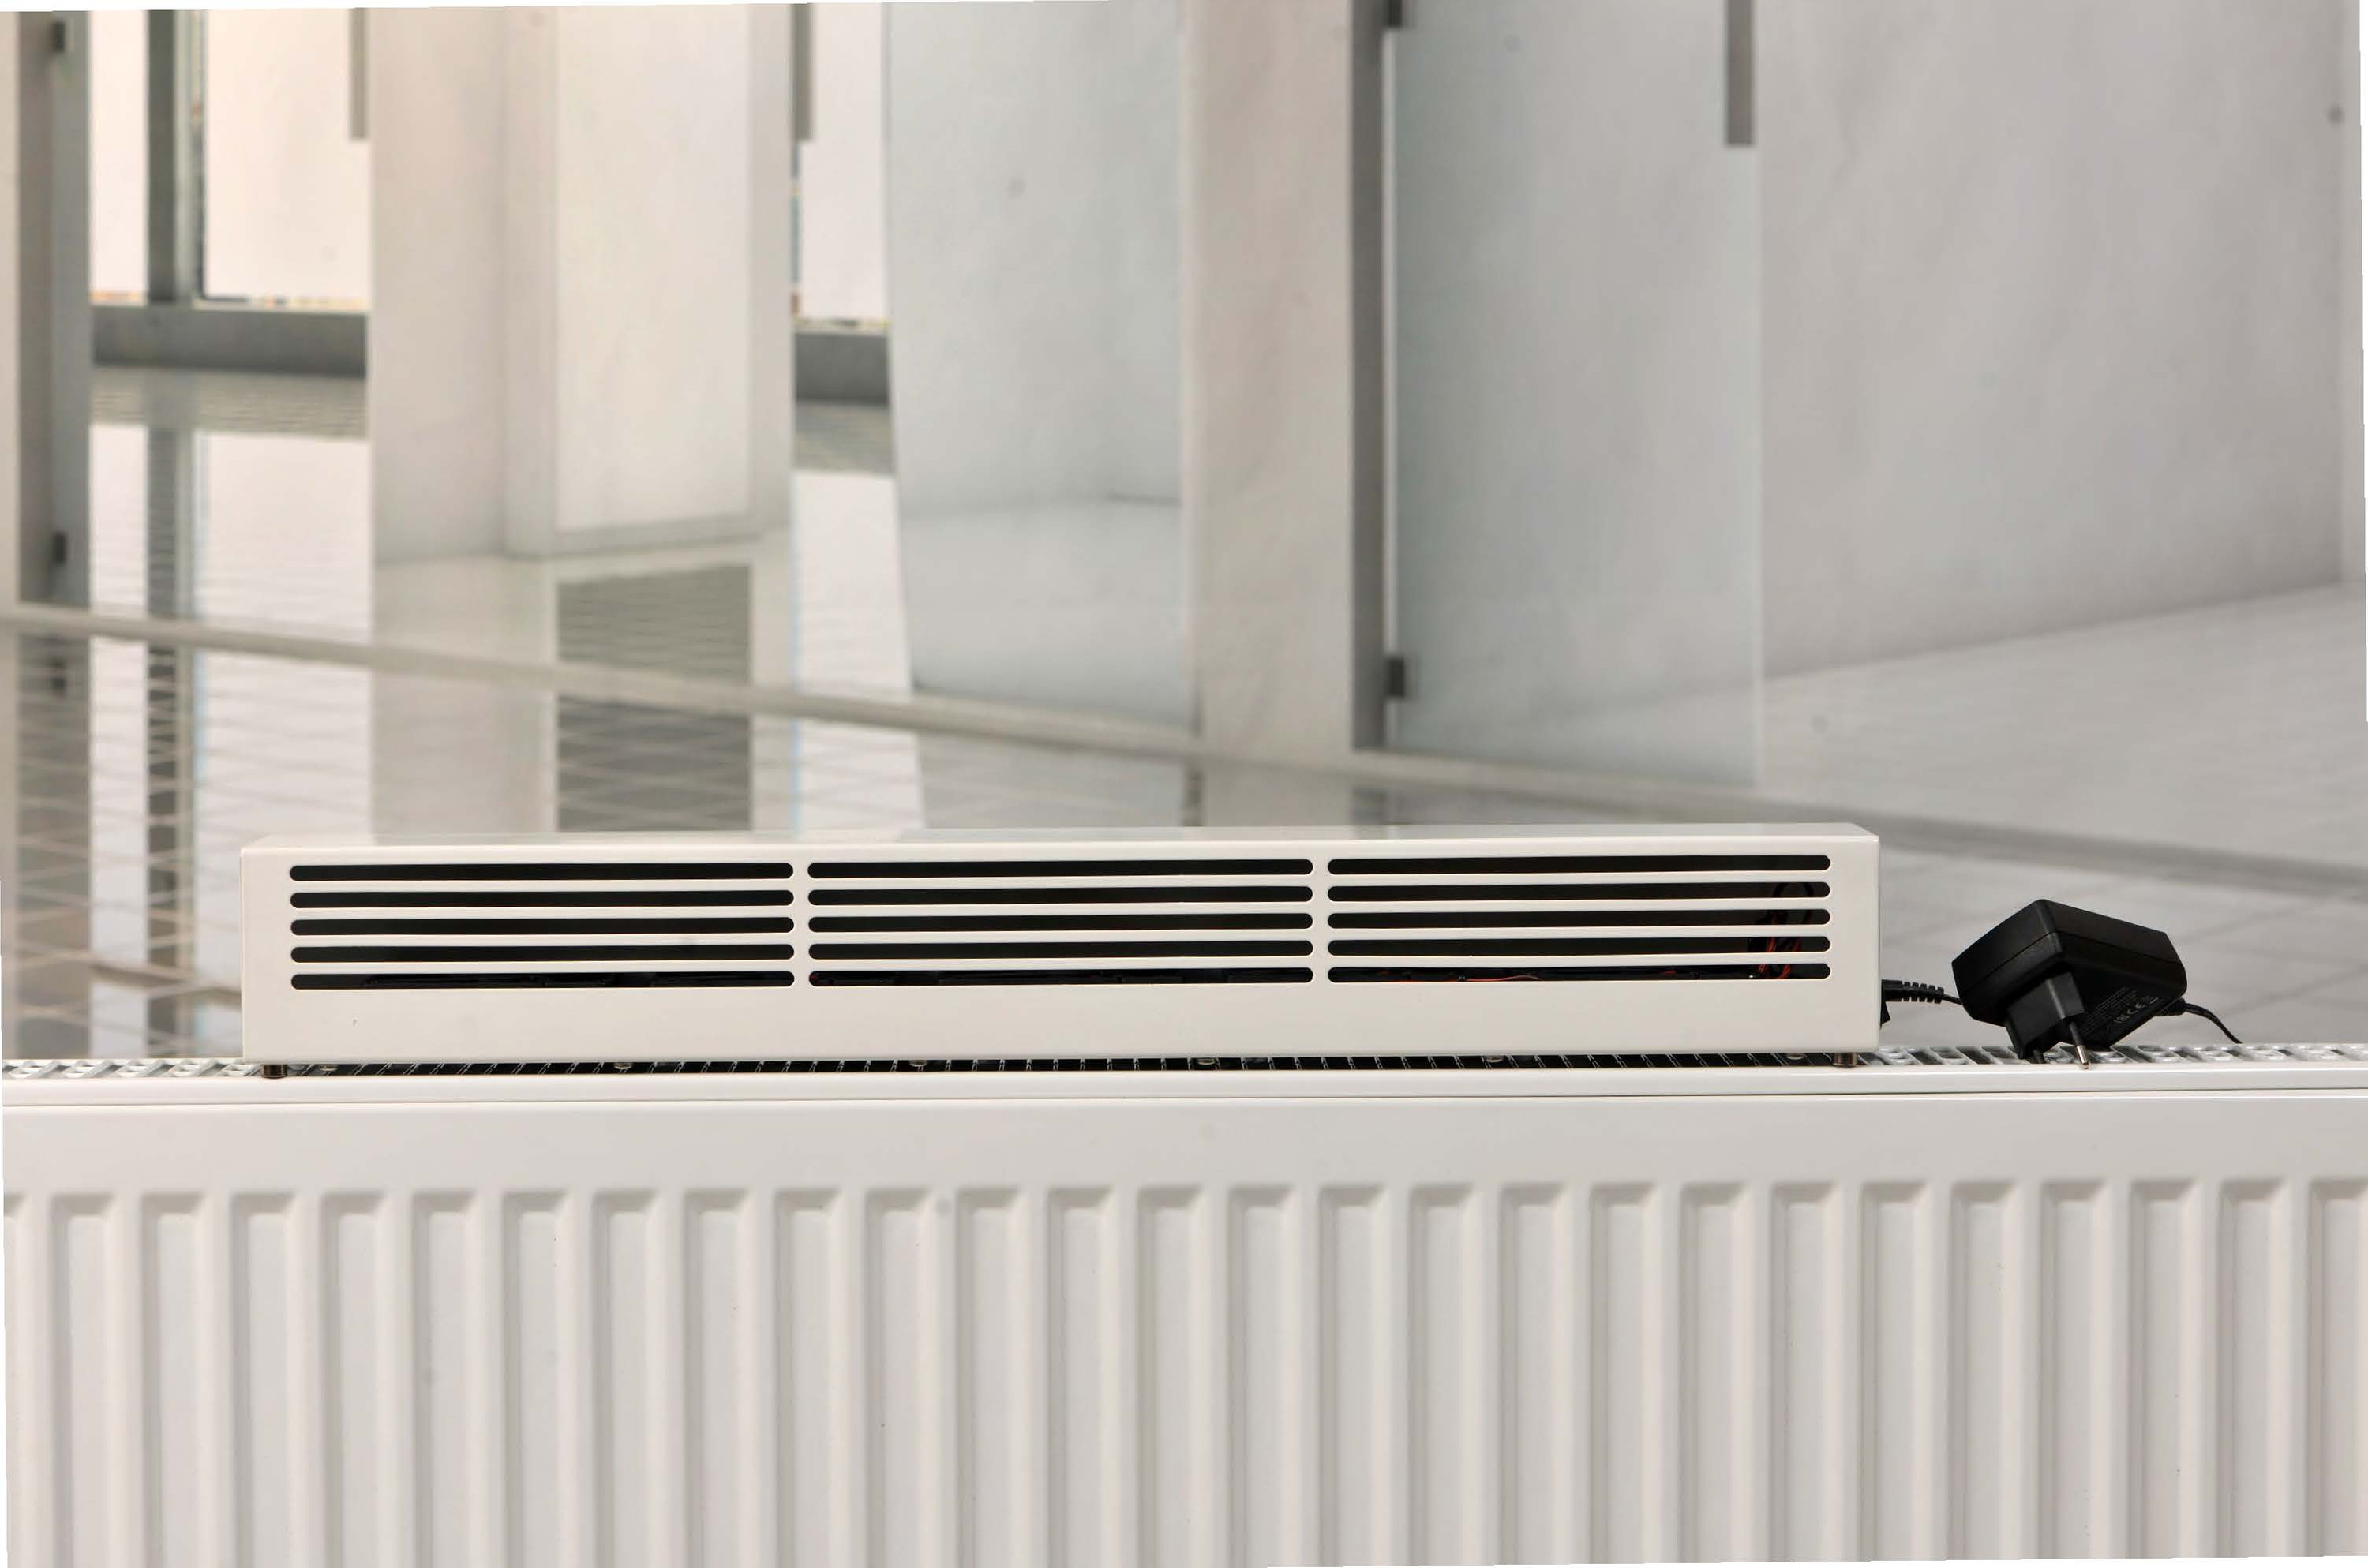 Lumair 50 Heizluftverstärker / Ventilator - für Raumgrösse bis 35 m2 - Passend für alle gängigen Heizkörper - Made in Germany